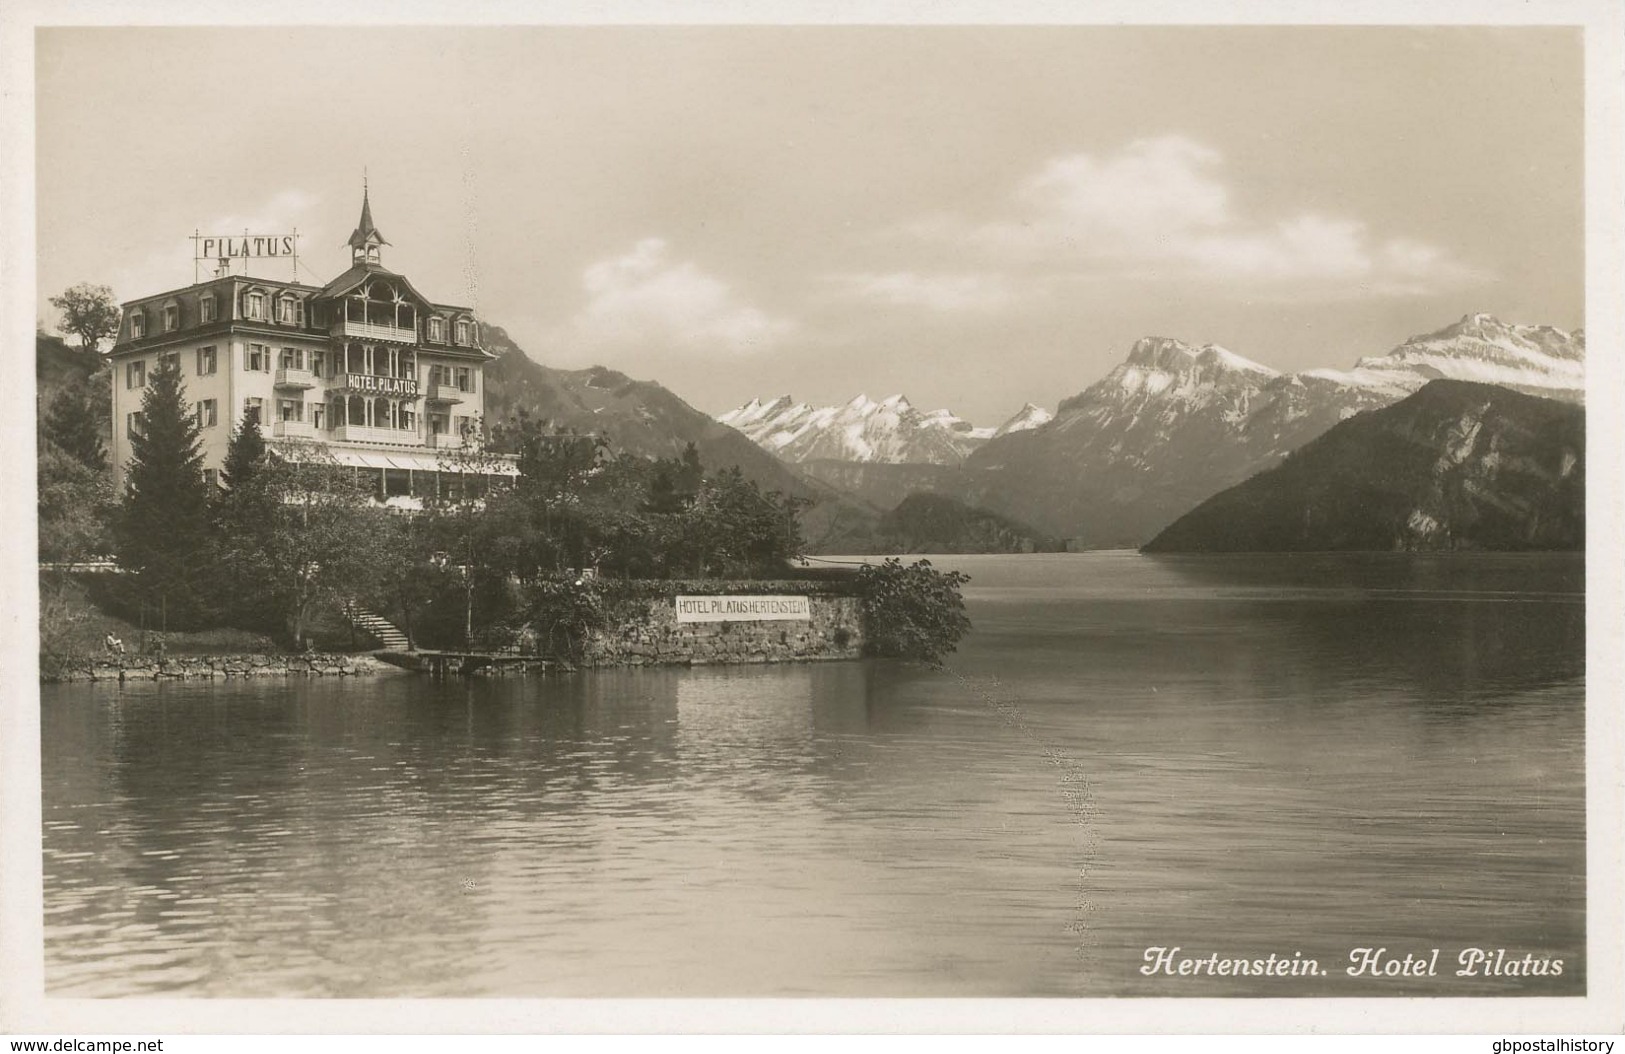 SCHWEIZ HERTENSTEIN (Gemeinde Weggis), Ca. 1920, Ungebr. S/w RP AK "Hertenstein. Hotel Pilatus." (Kunstverlag E. Goetz, - Weggis